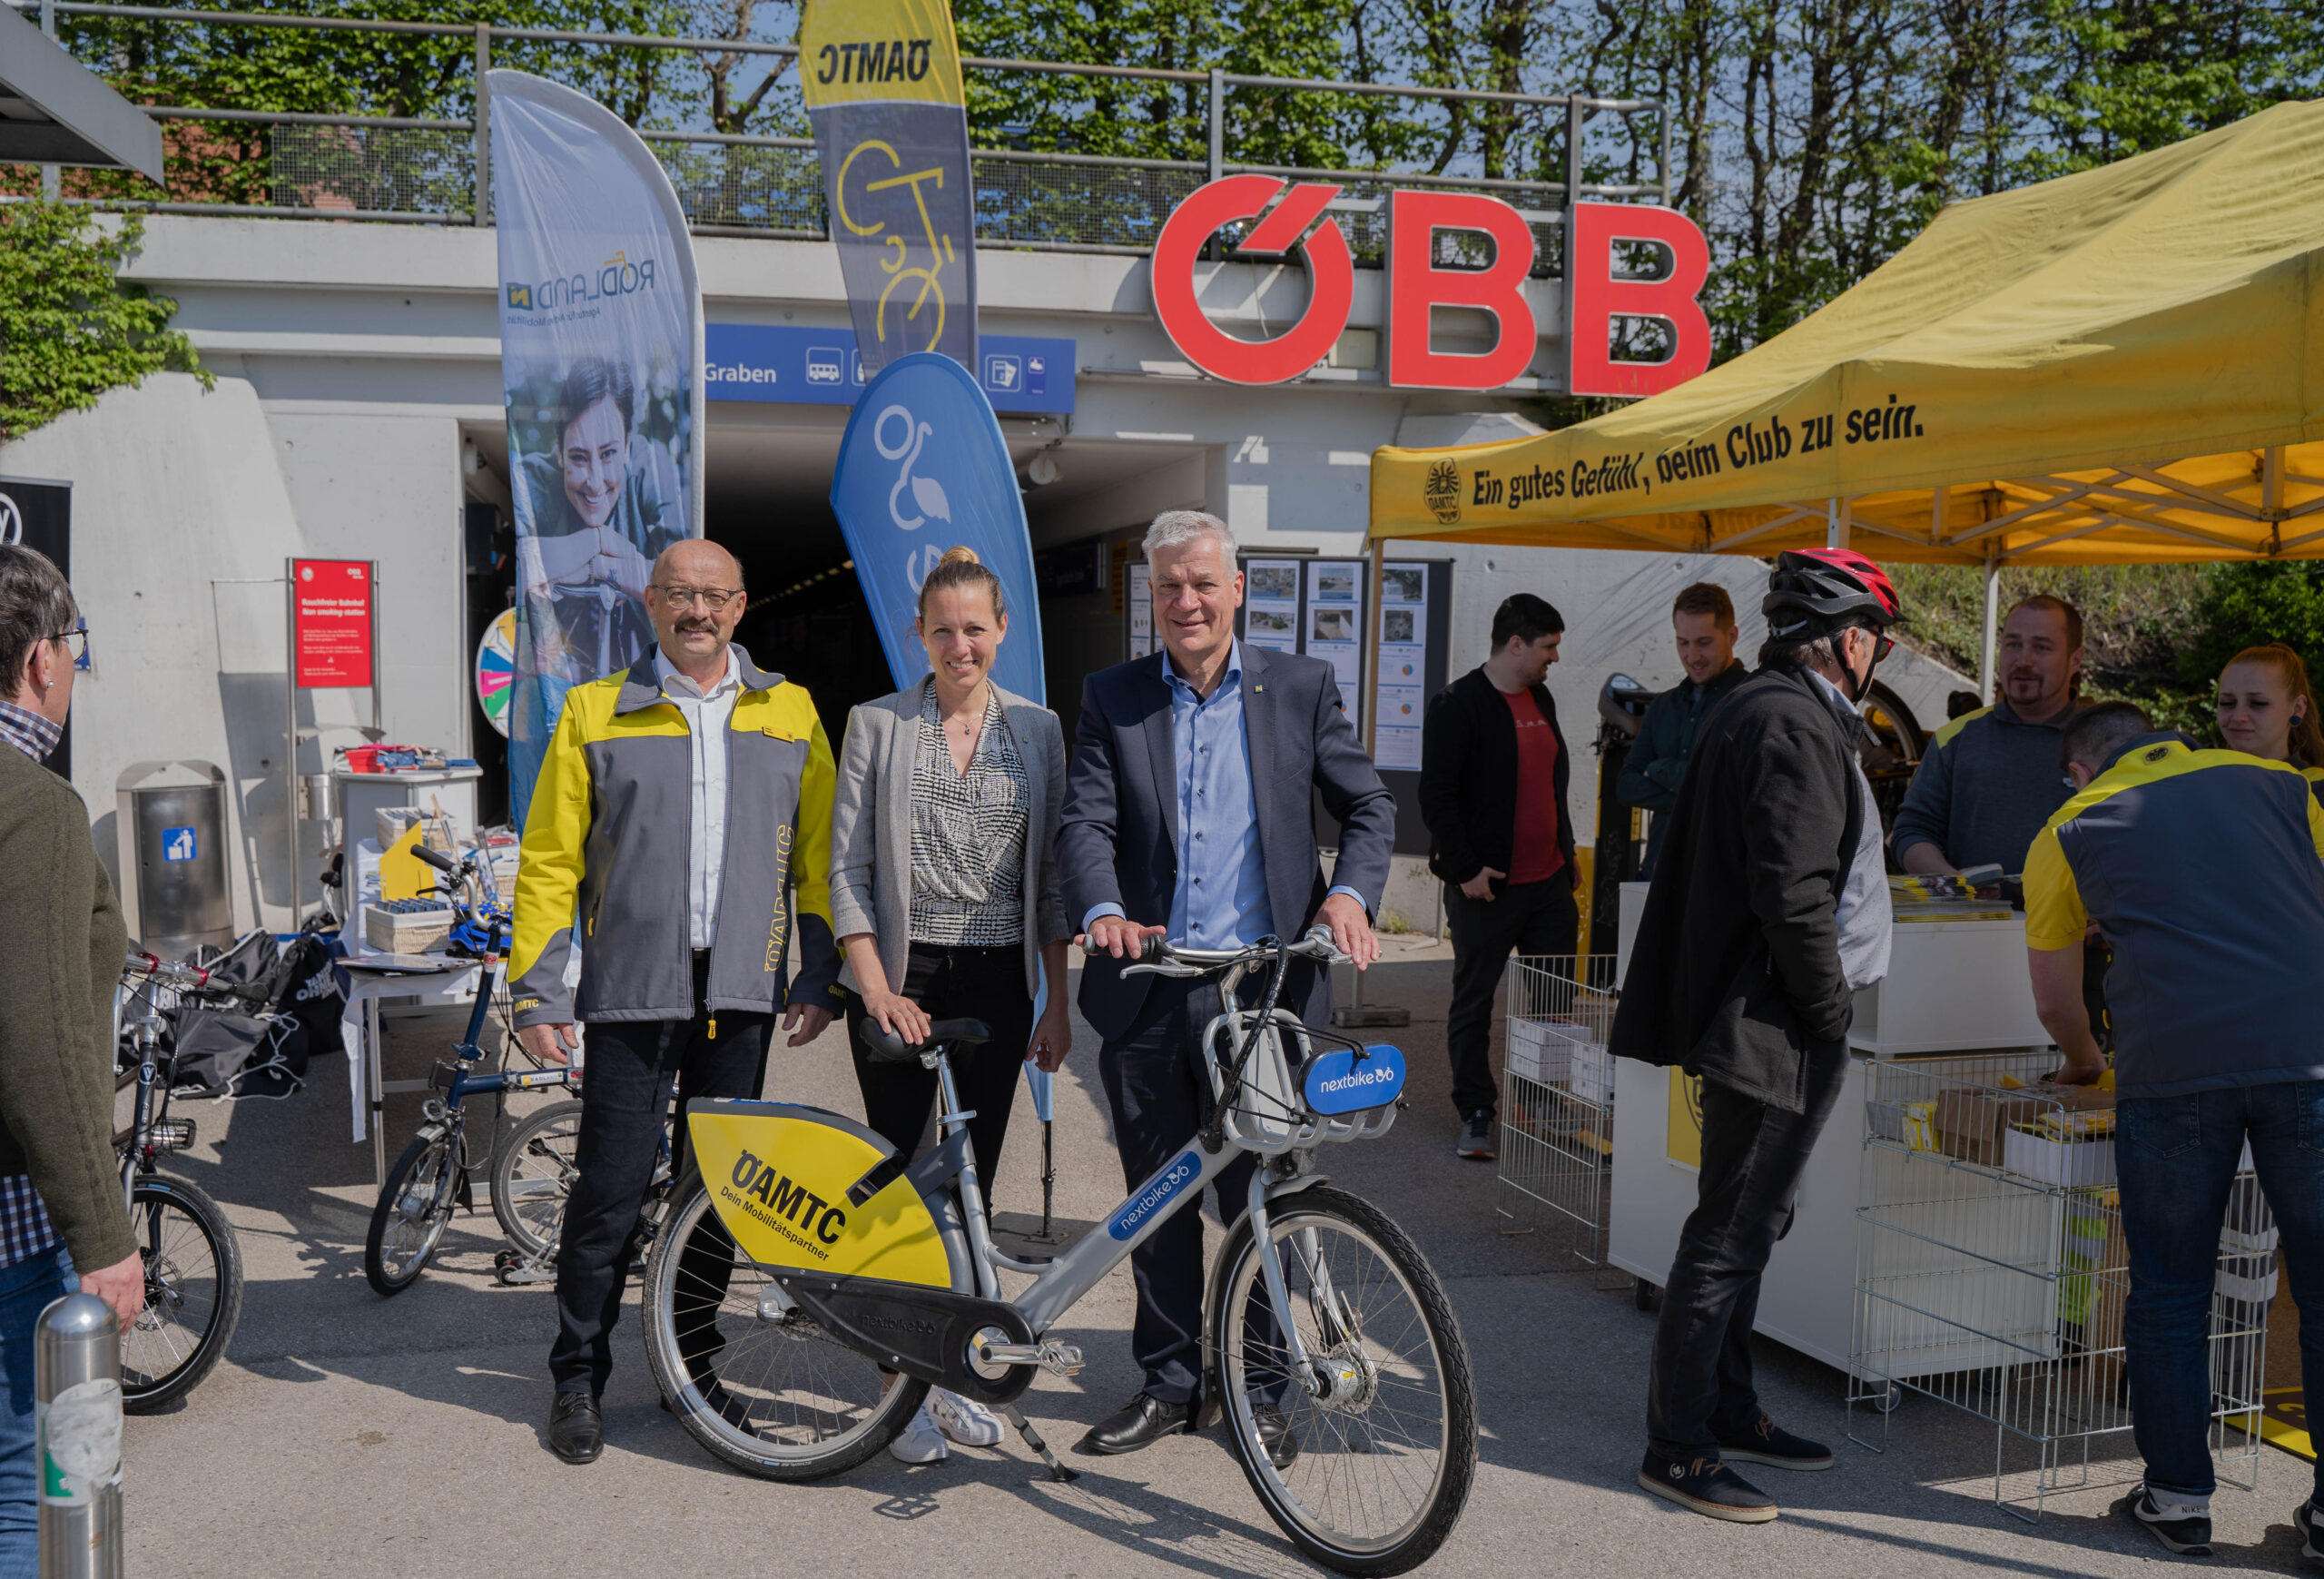 nextbike gewinnt neuen Mobilitätspartner! - Radland